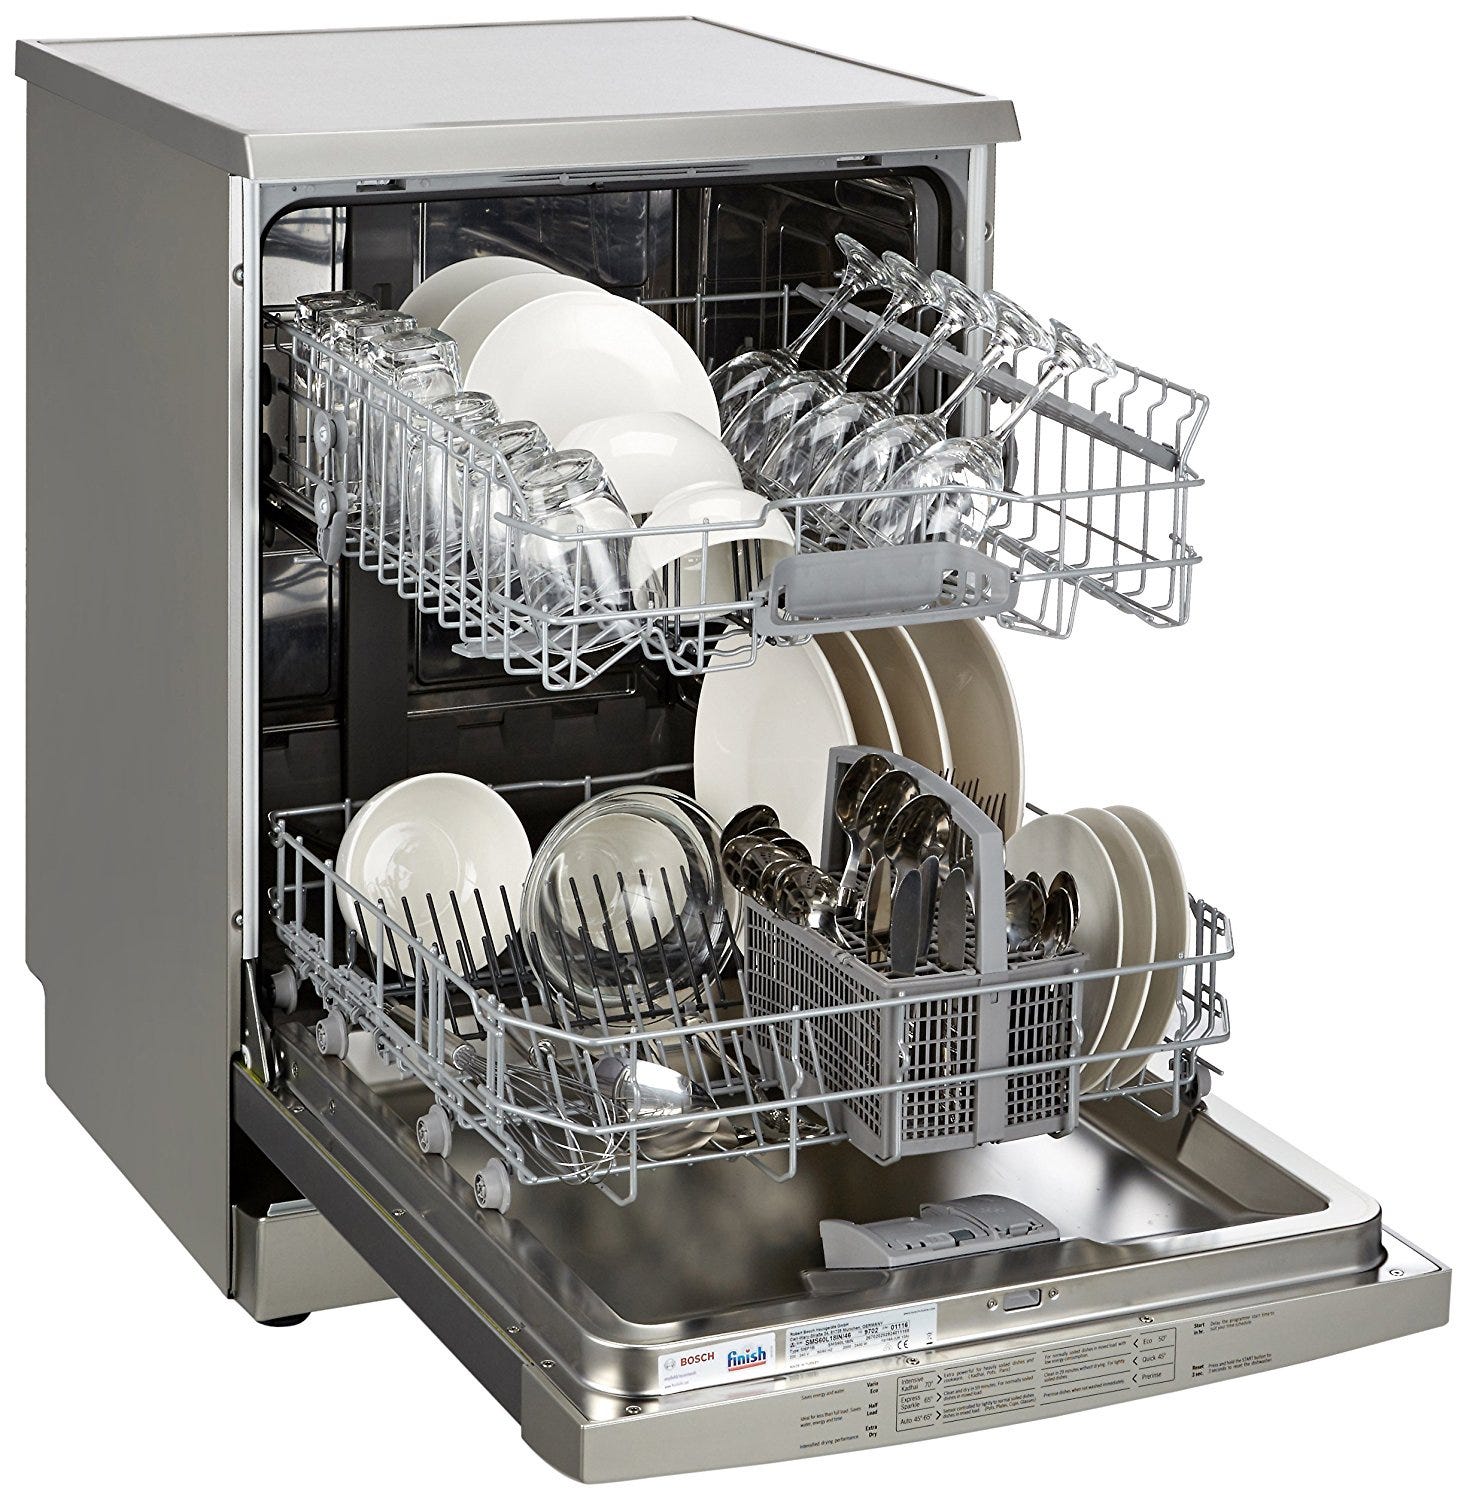 reasonably priced dishwashers